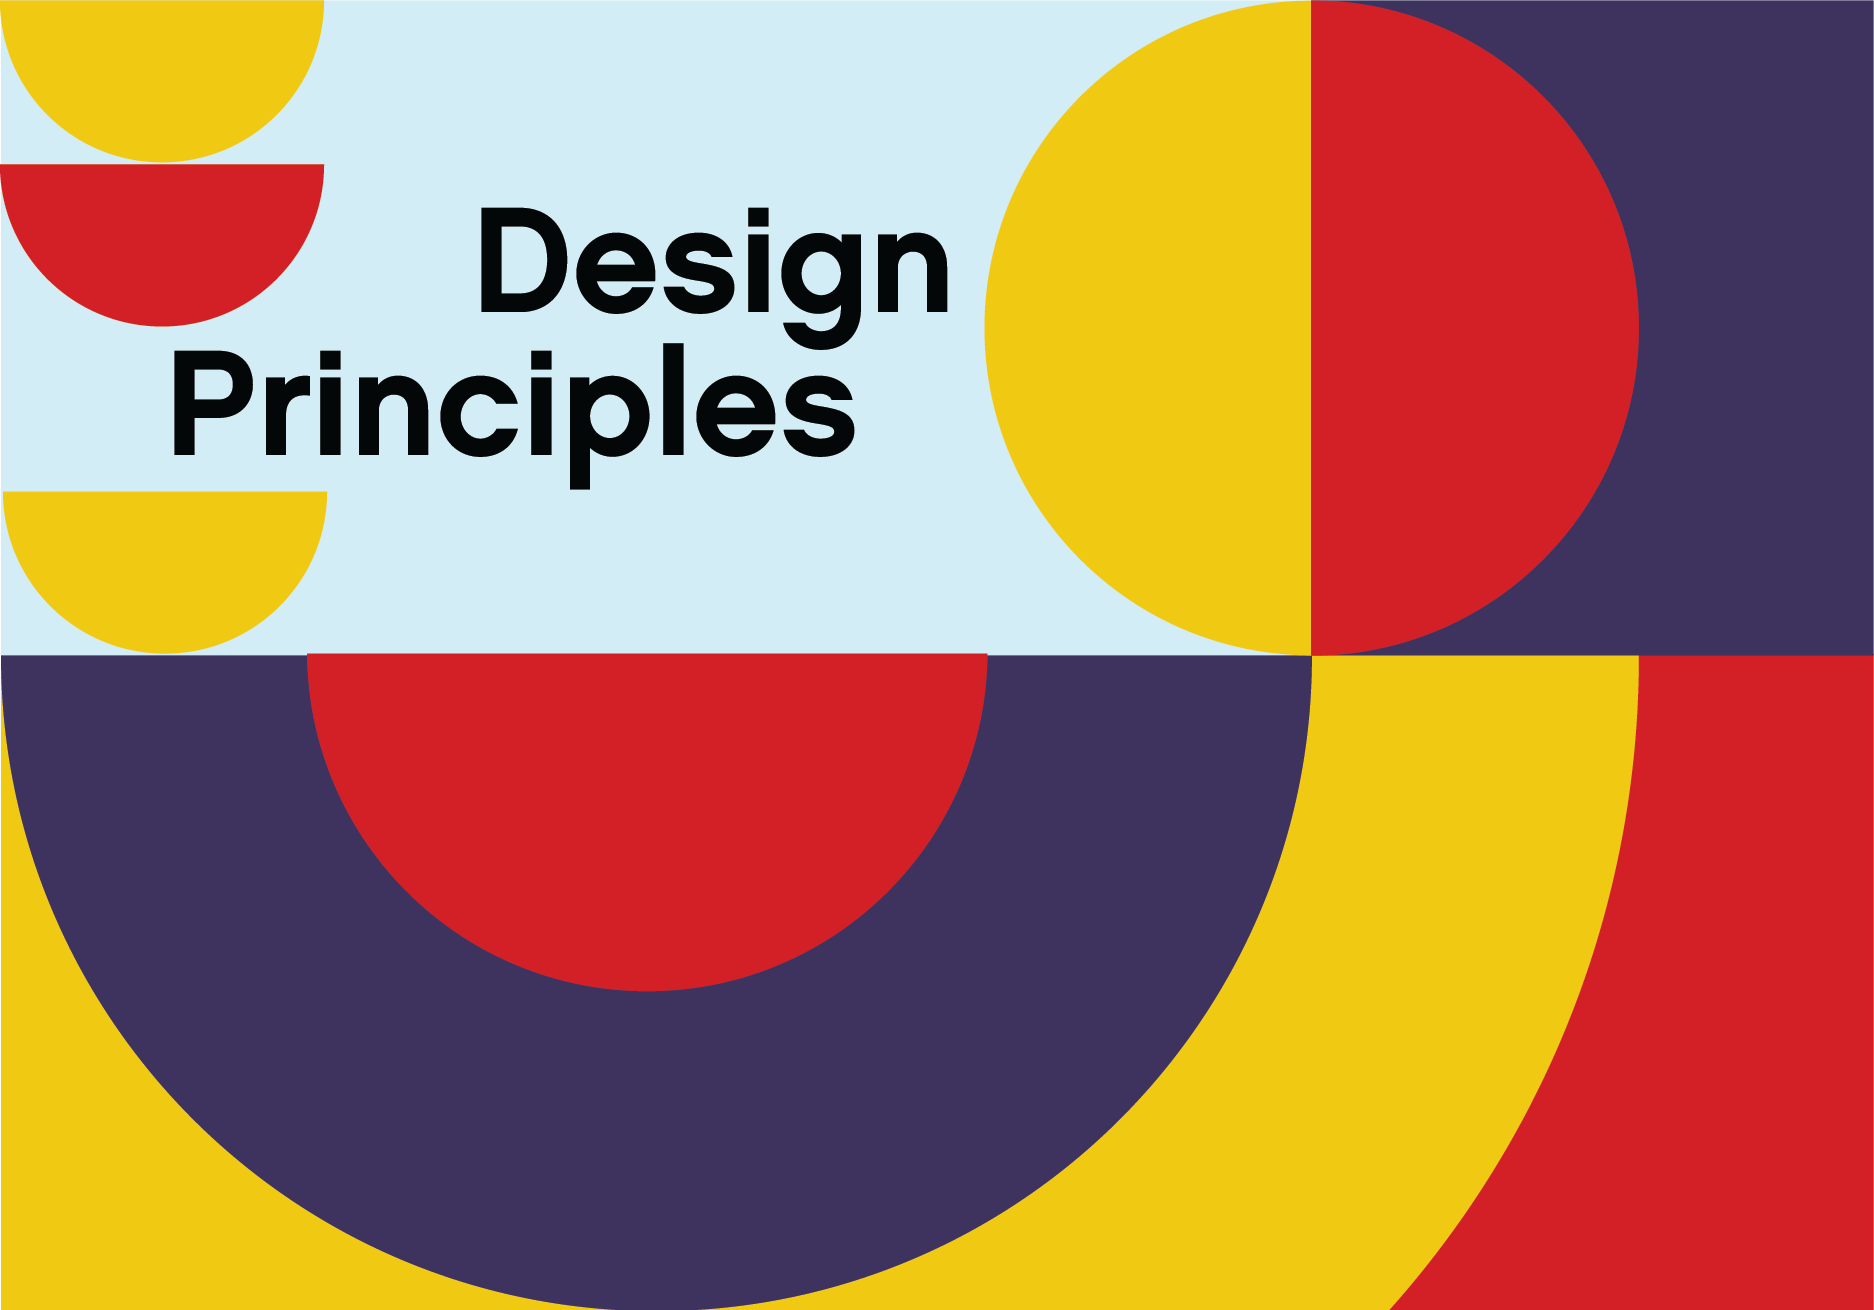 Design de engenharia - Série 11 - Questionário